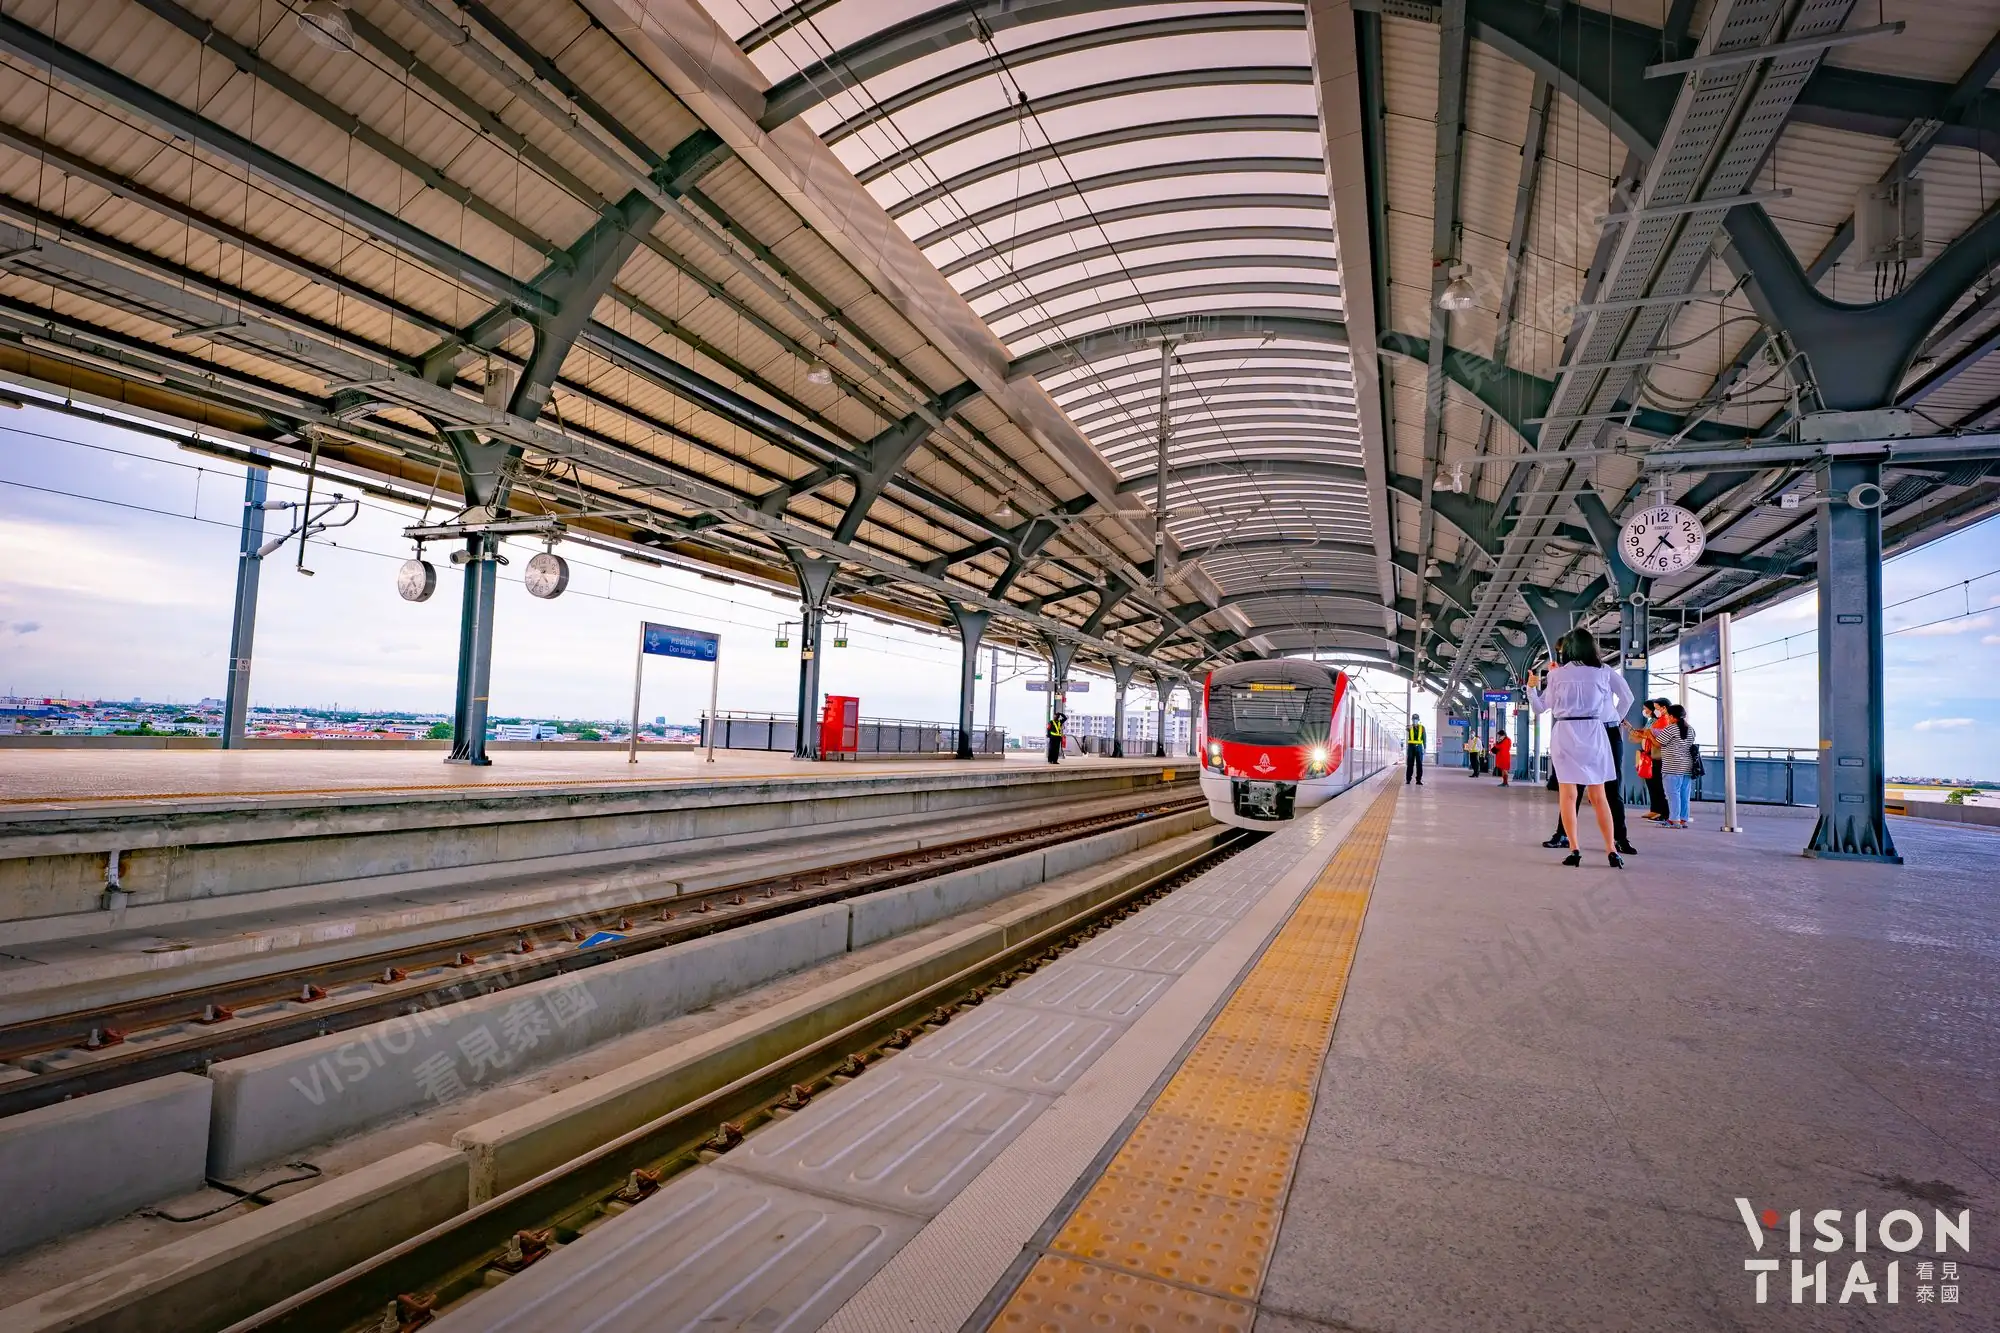 紅線免費搭乘服務將持續到10月底，預計11月起開始商轉（VISION THAI 看見泰國）